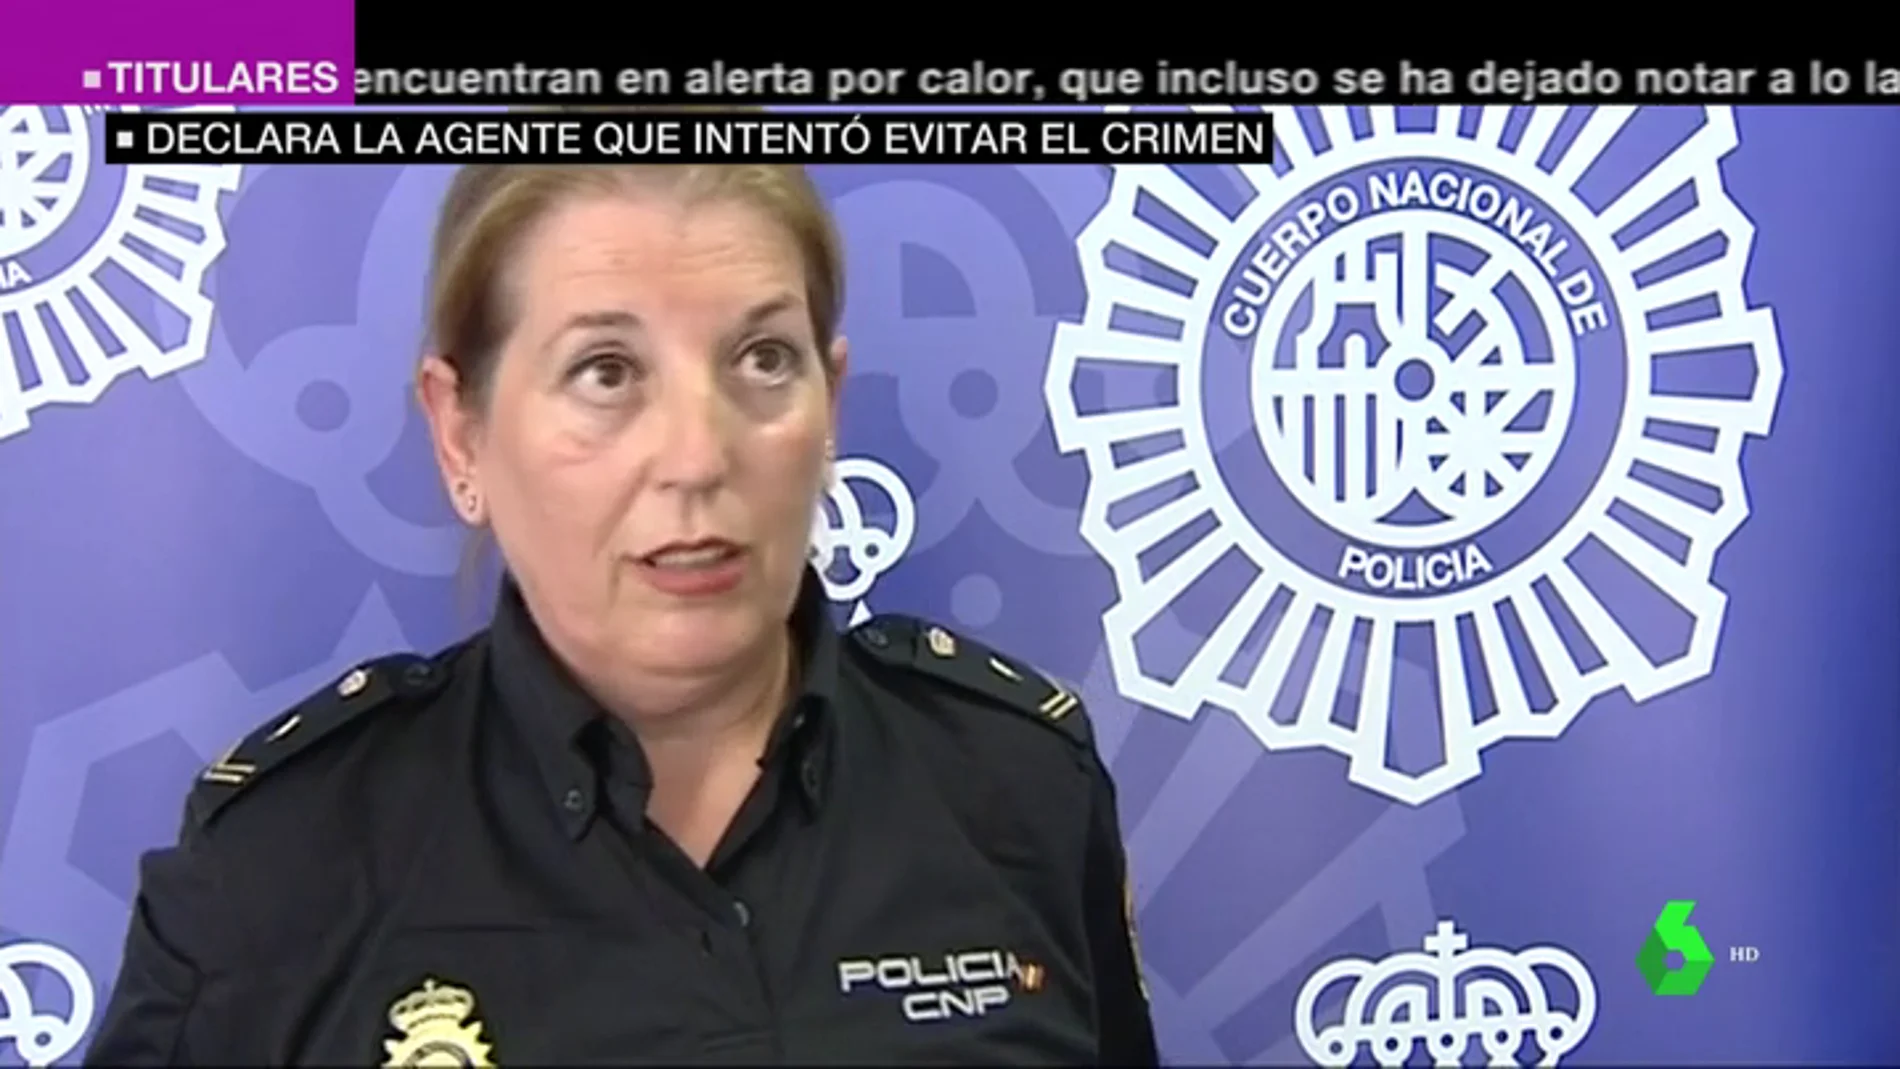 El testimonio de la policía que intentó evitar el crimen de Alicante: "Cuando llegué vi a dos personas sobre otra que ya estaba muerta"